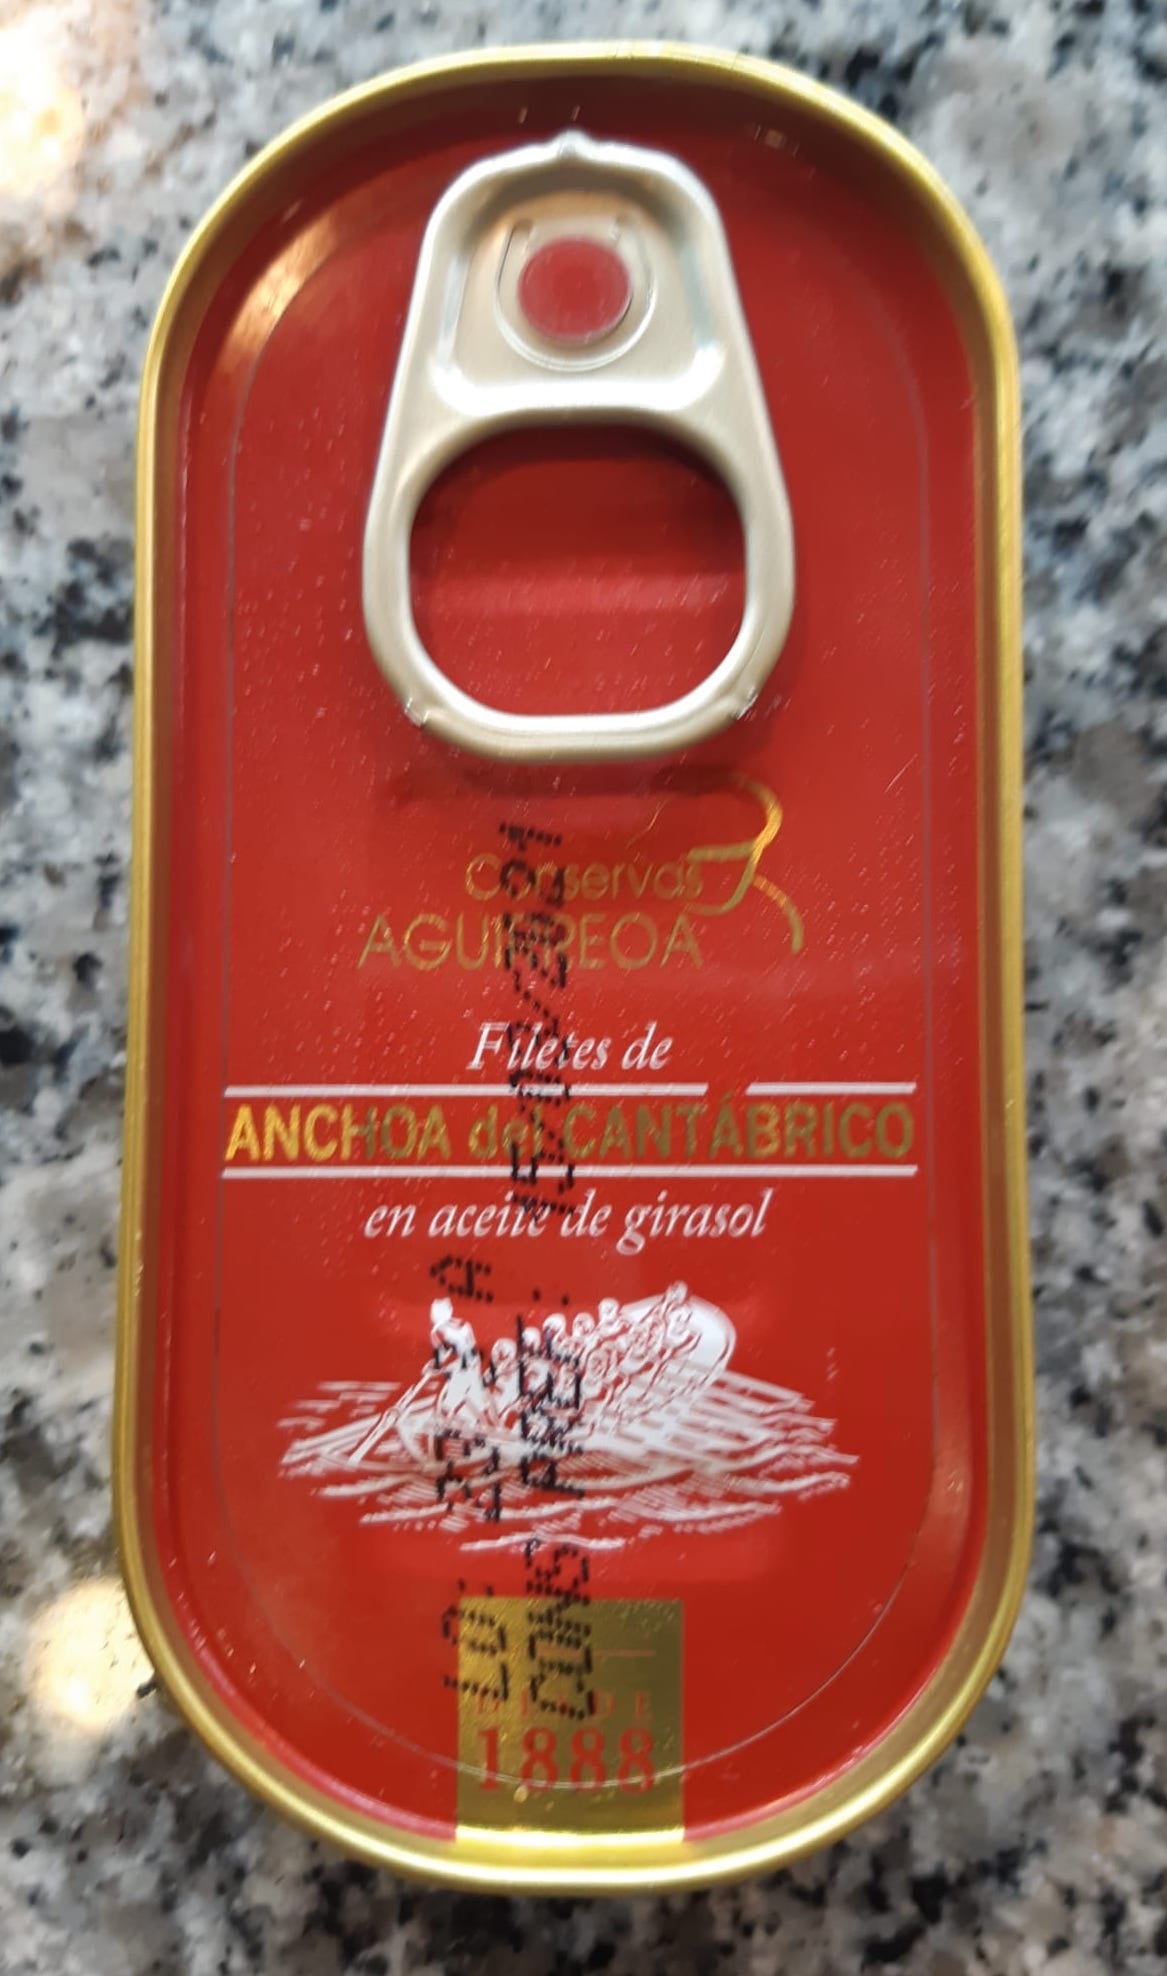 Anchoas Aguirreoa del Cantábrico en aceite de girasol. 6 ó 7 filetes